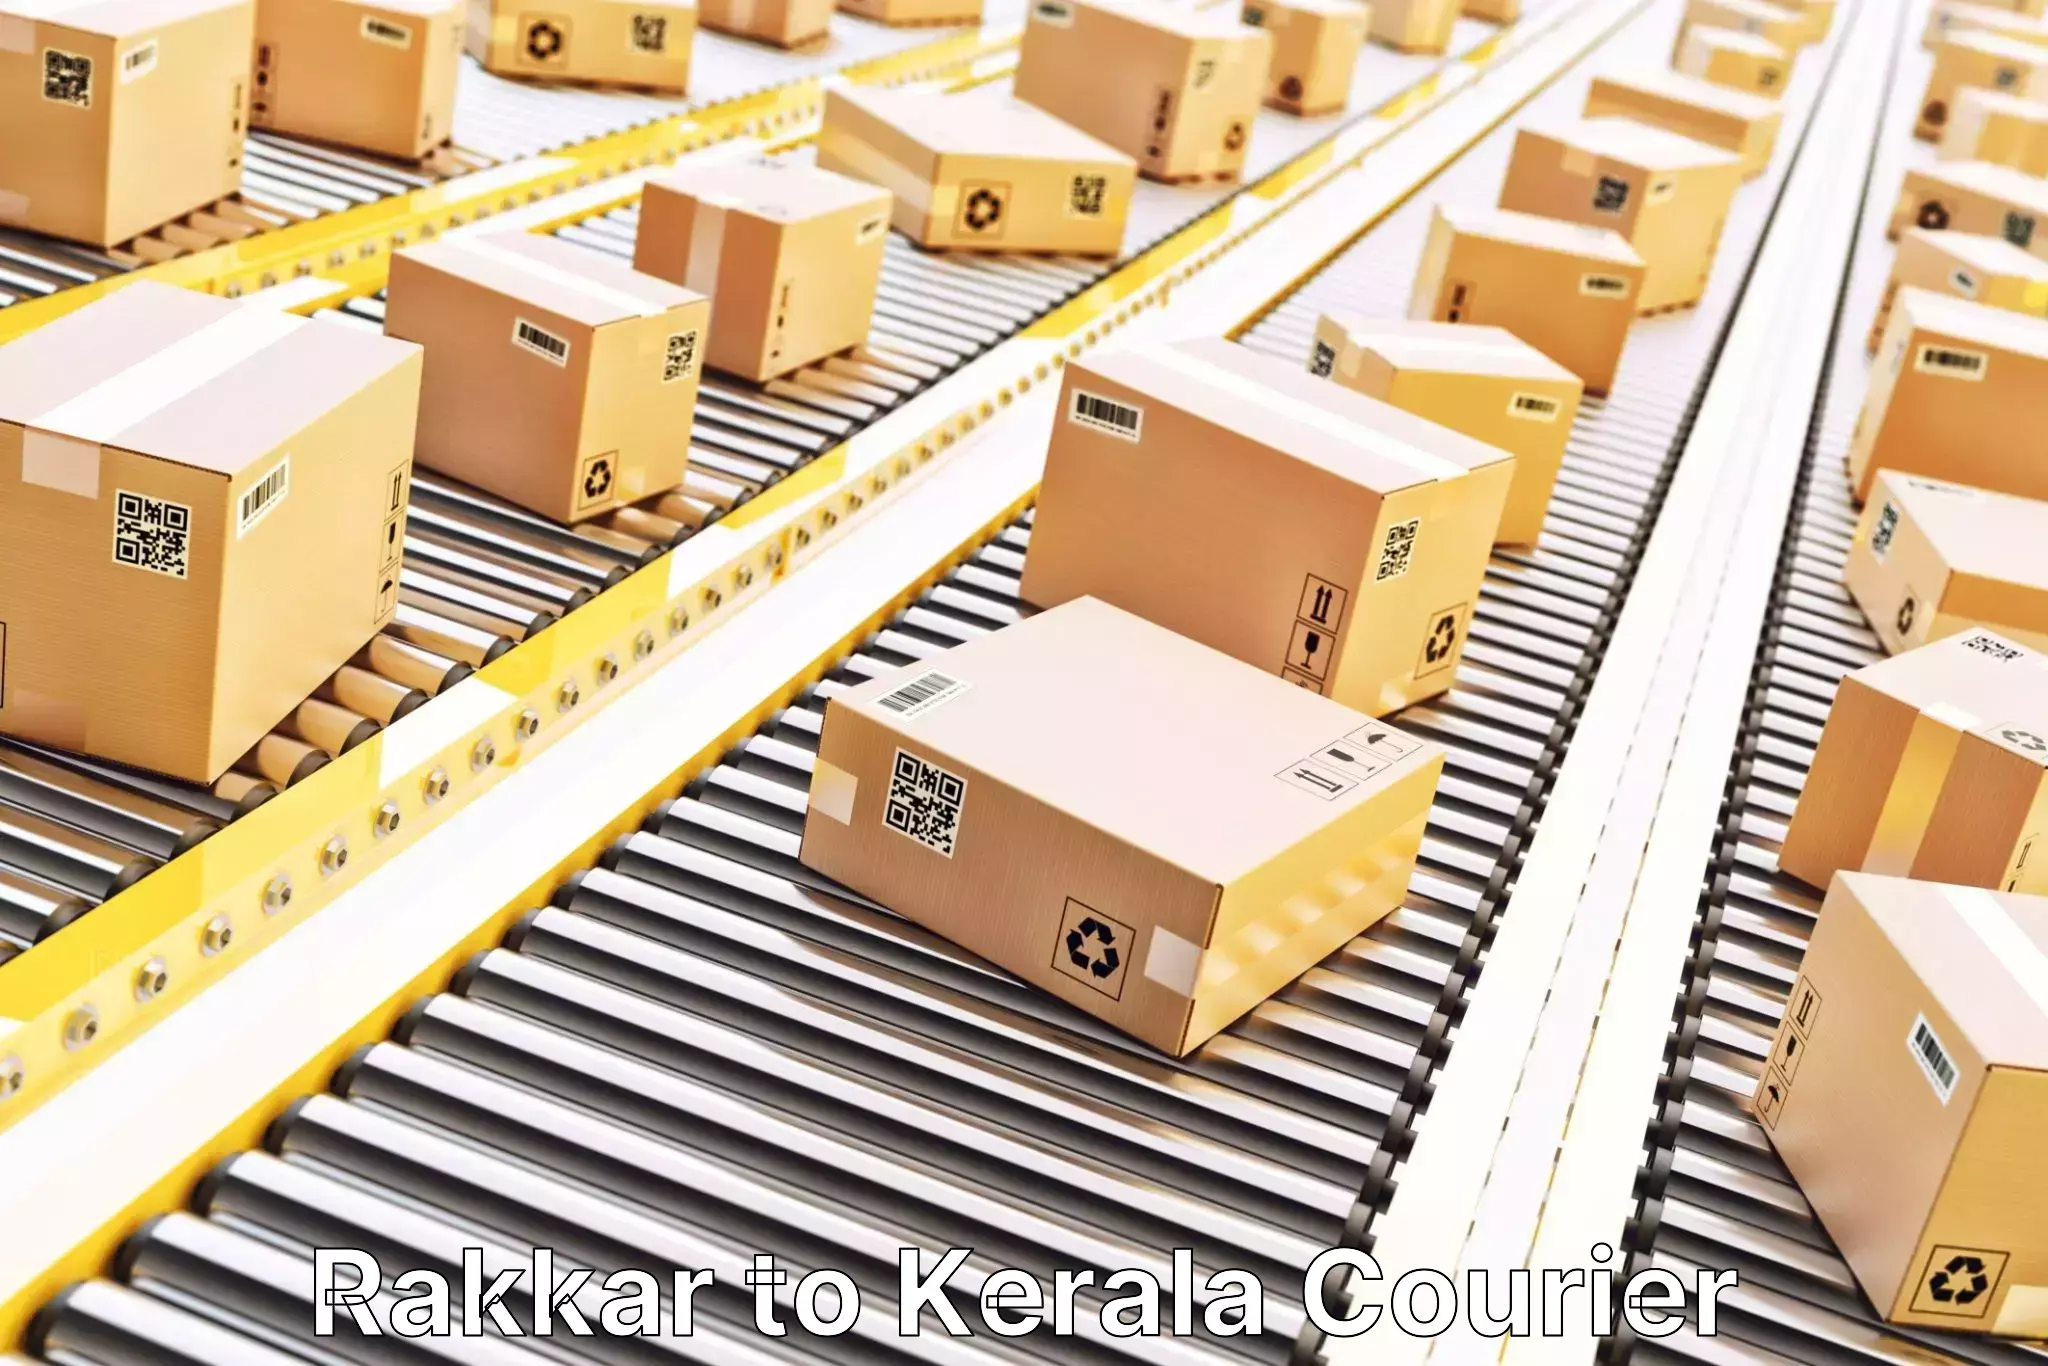 Efficient logistics management Rakkar to Kadanad